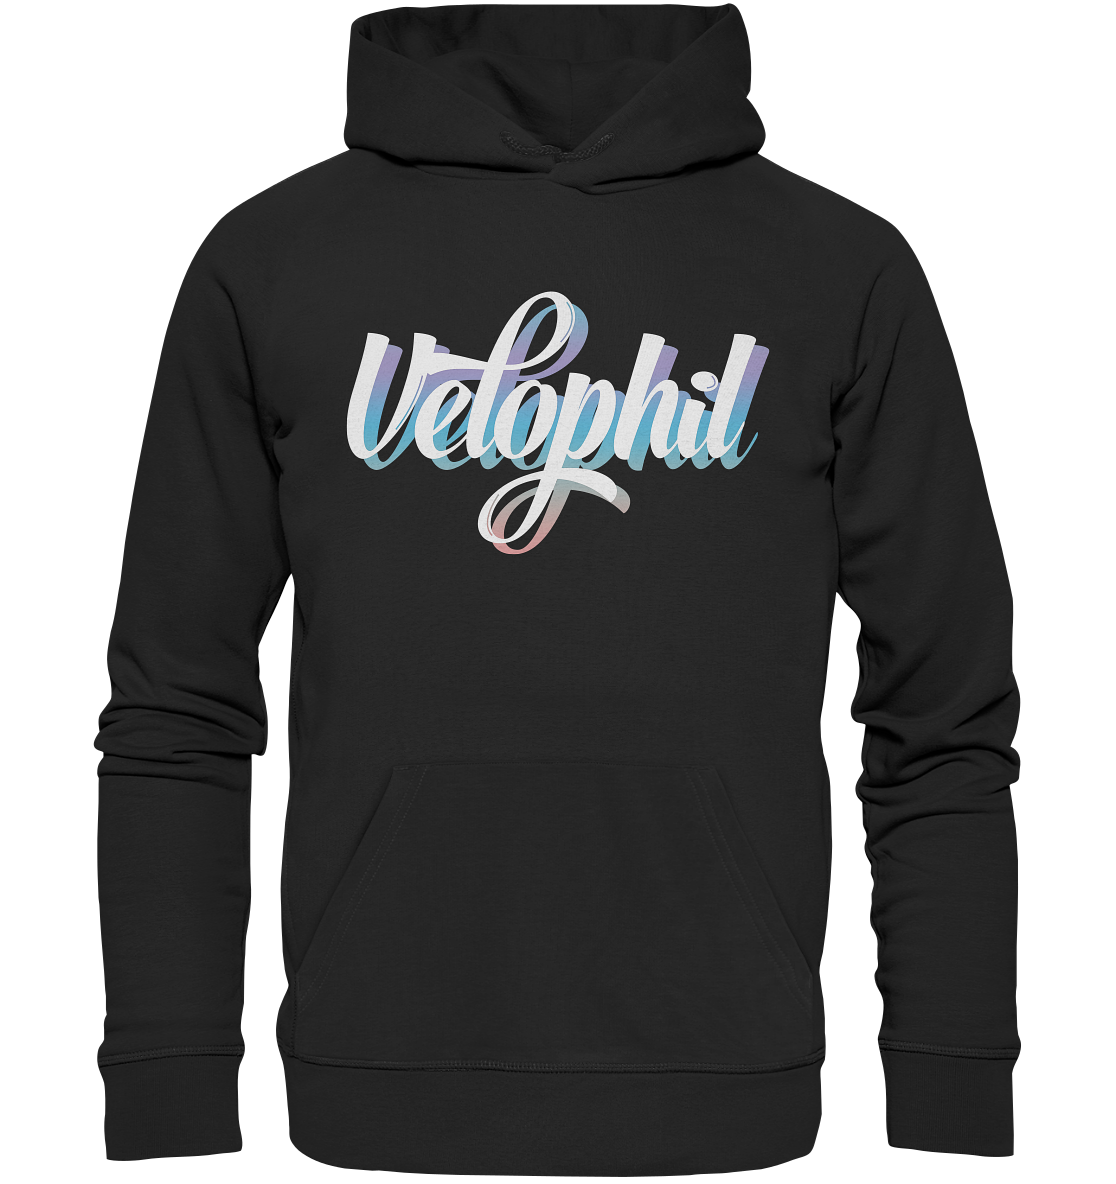 Veolphil cloud - Organic Basic Hoodie